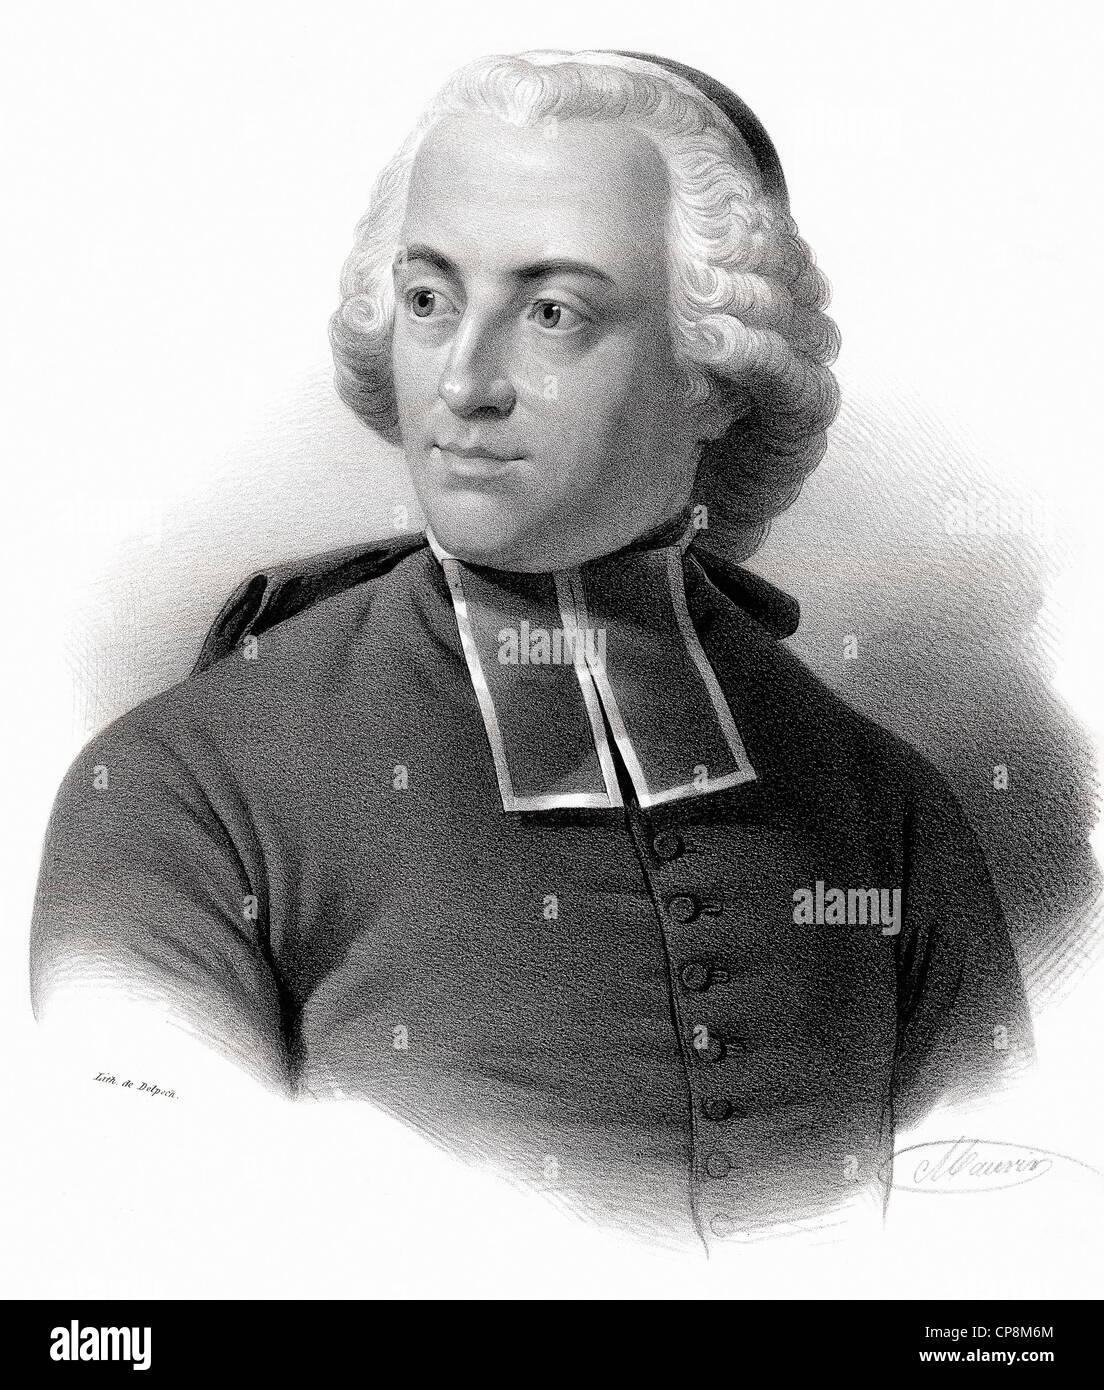 Abbé von Muréaux, philosopher and logician, Étienne Bonnot de Condillac, the Age of Enlightenment, sensationalist epistemology, Stock Photo